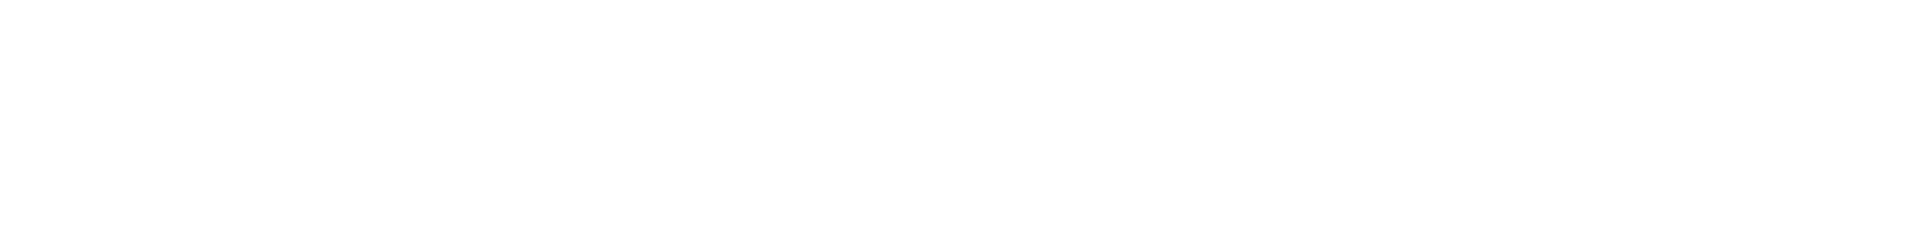 Αμπελοπάσσαλος - Αμπελουργικός πάσσαλος